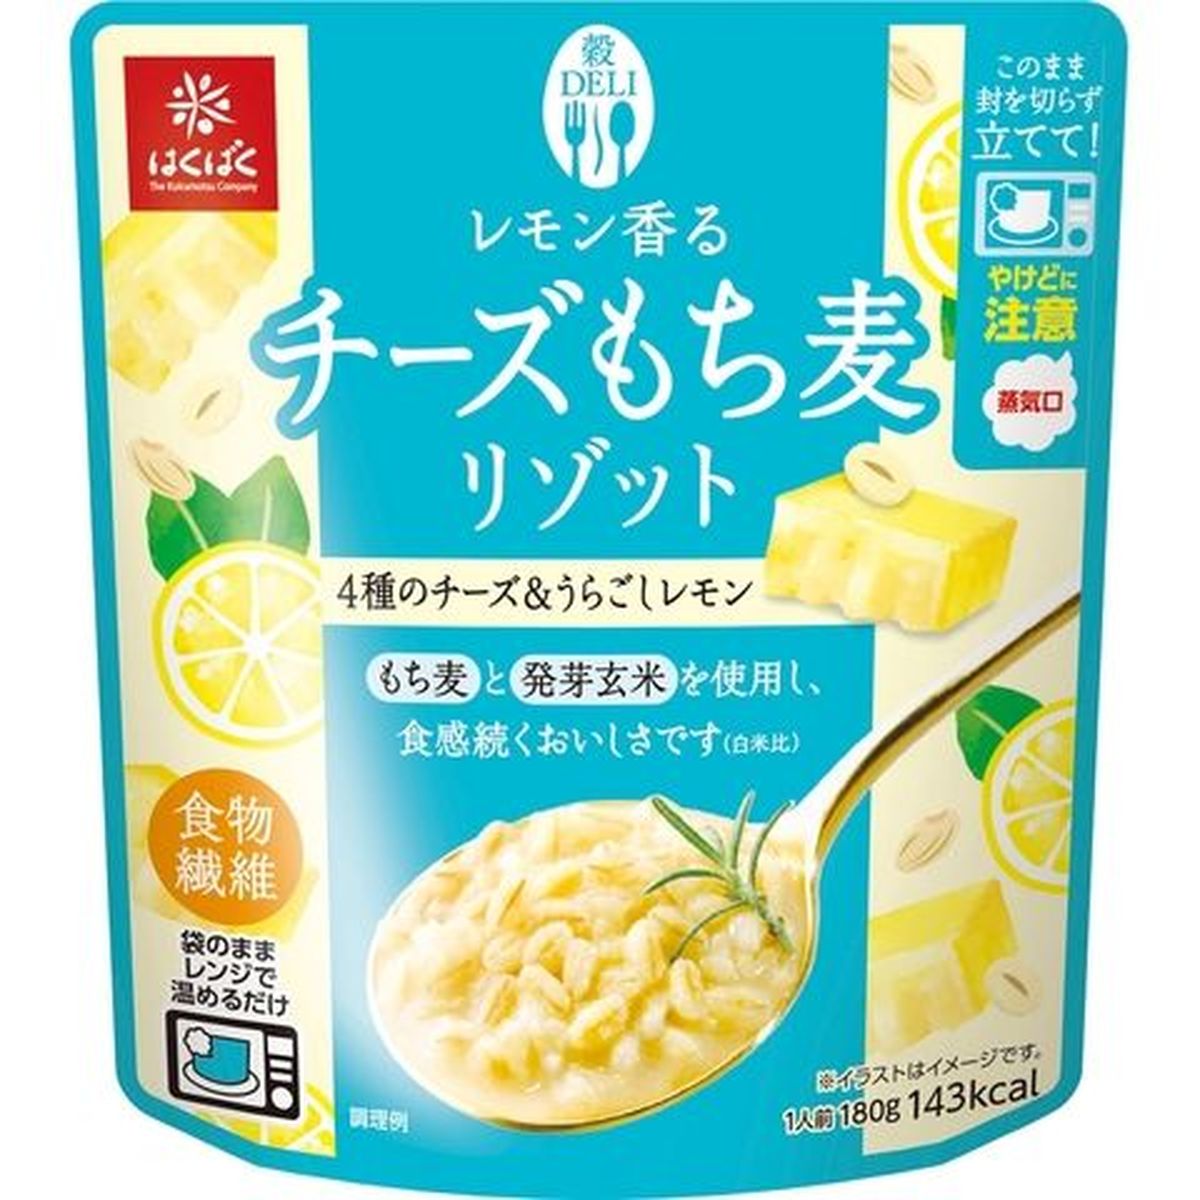 【8個入リ】ハクバク チーズモチ麦リゾット 180g